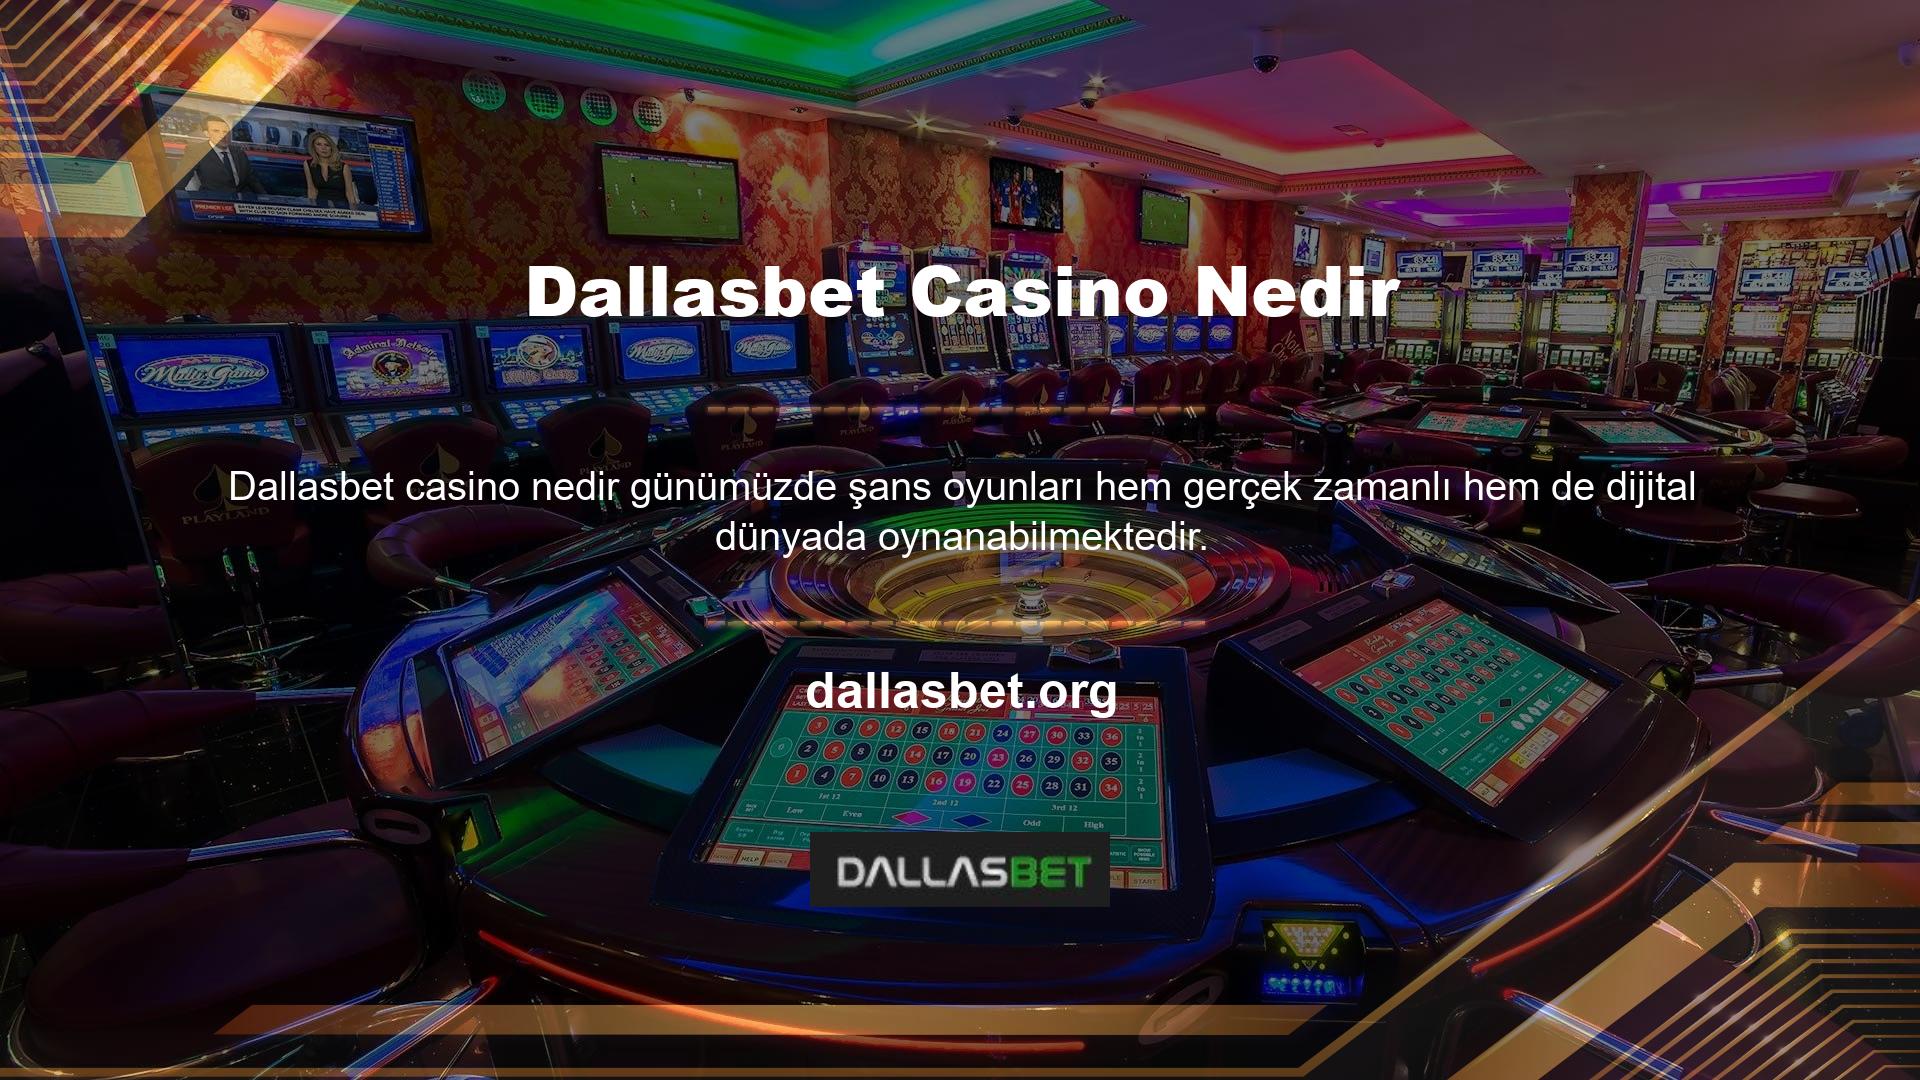 Yabancı bahis siteleri, yüksek oranları ve geniş Dallasbet casino oyunları yelpazesi nedeniyle özellikle avantajlıdır